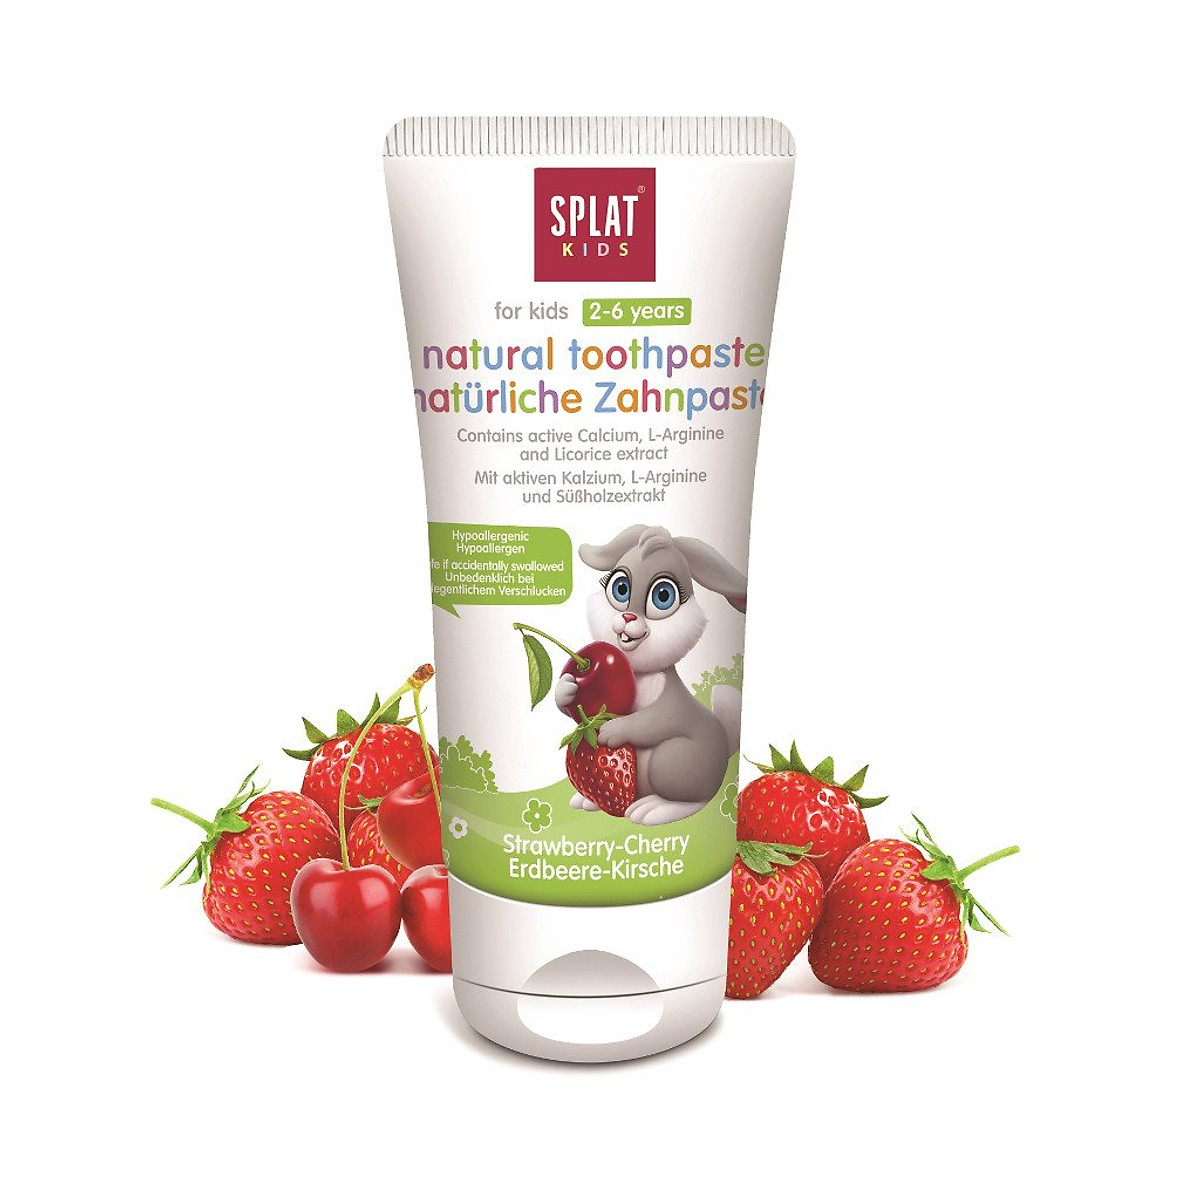 Kem đánh răng SPLAT Wild Strawberry-Cherry cho trẻ em 2-6 tuổi (hương dâu rừng - anh đào)(55ml)